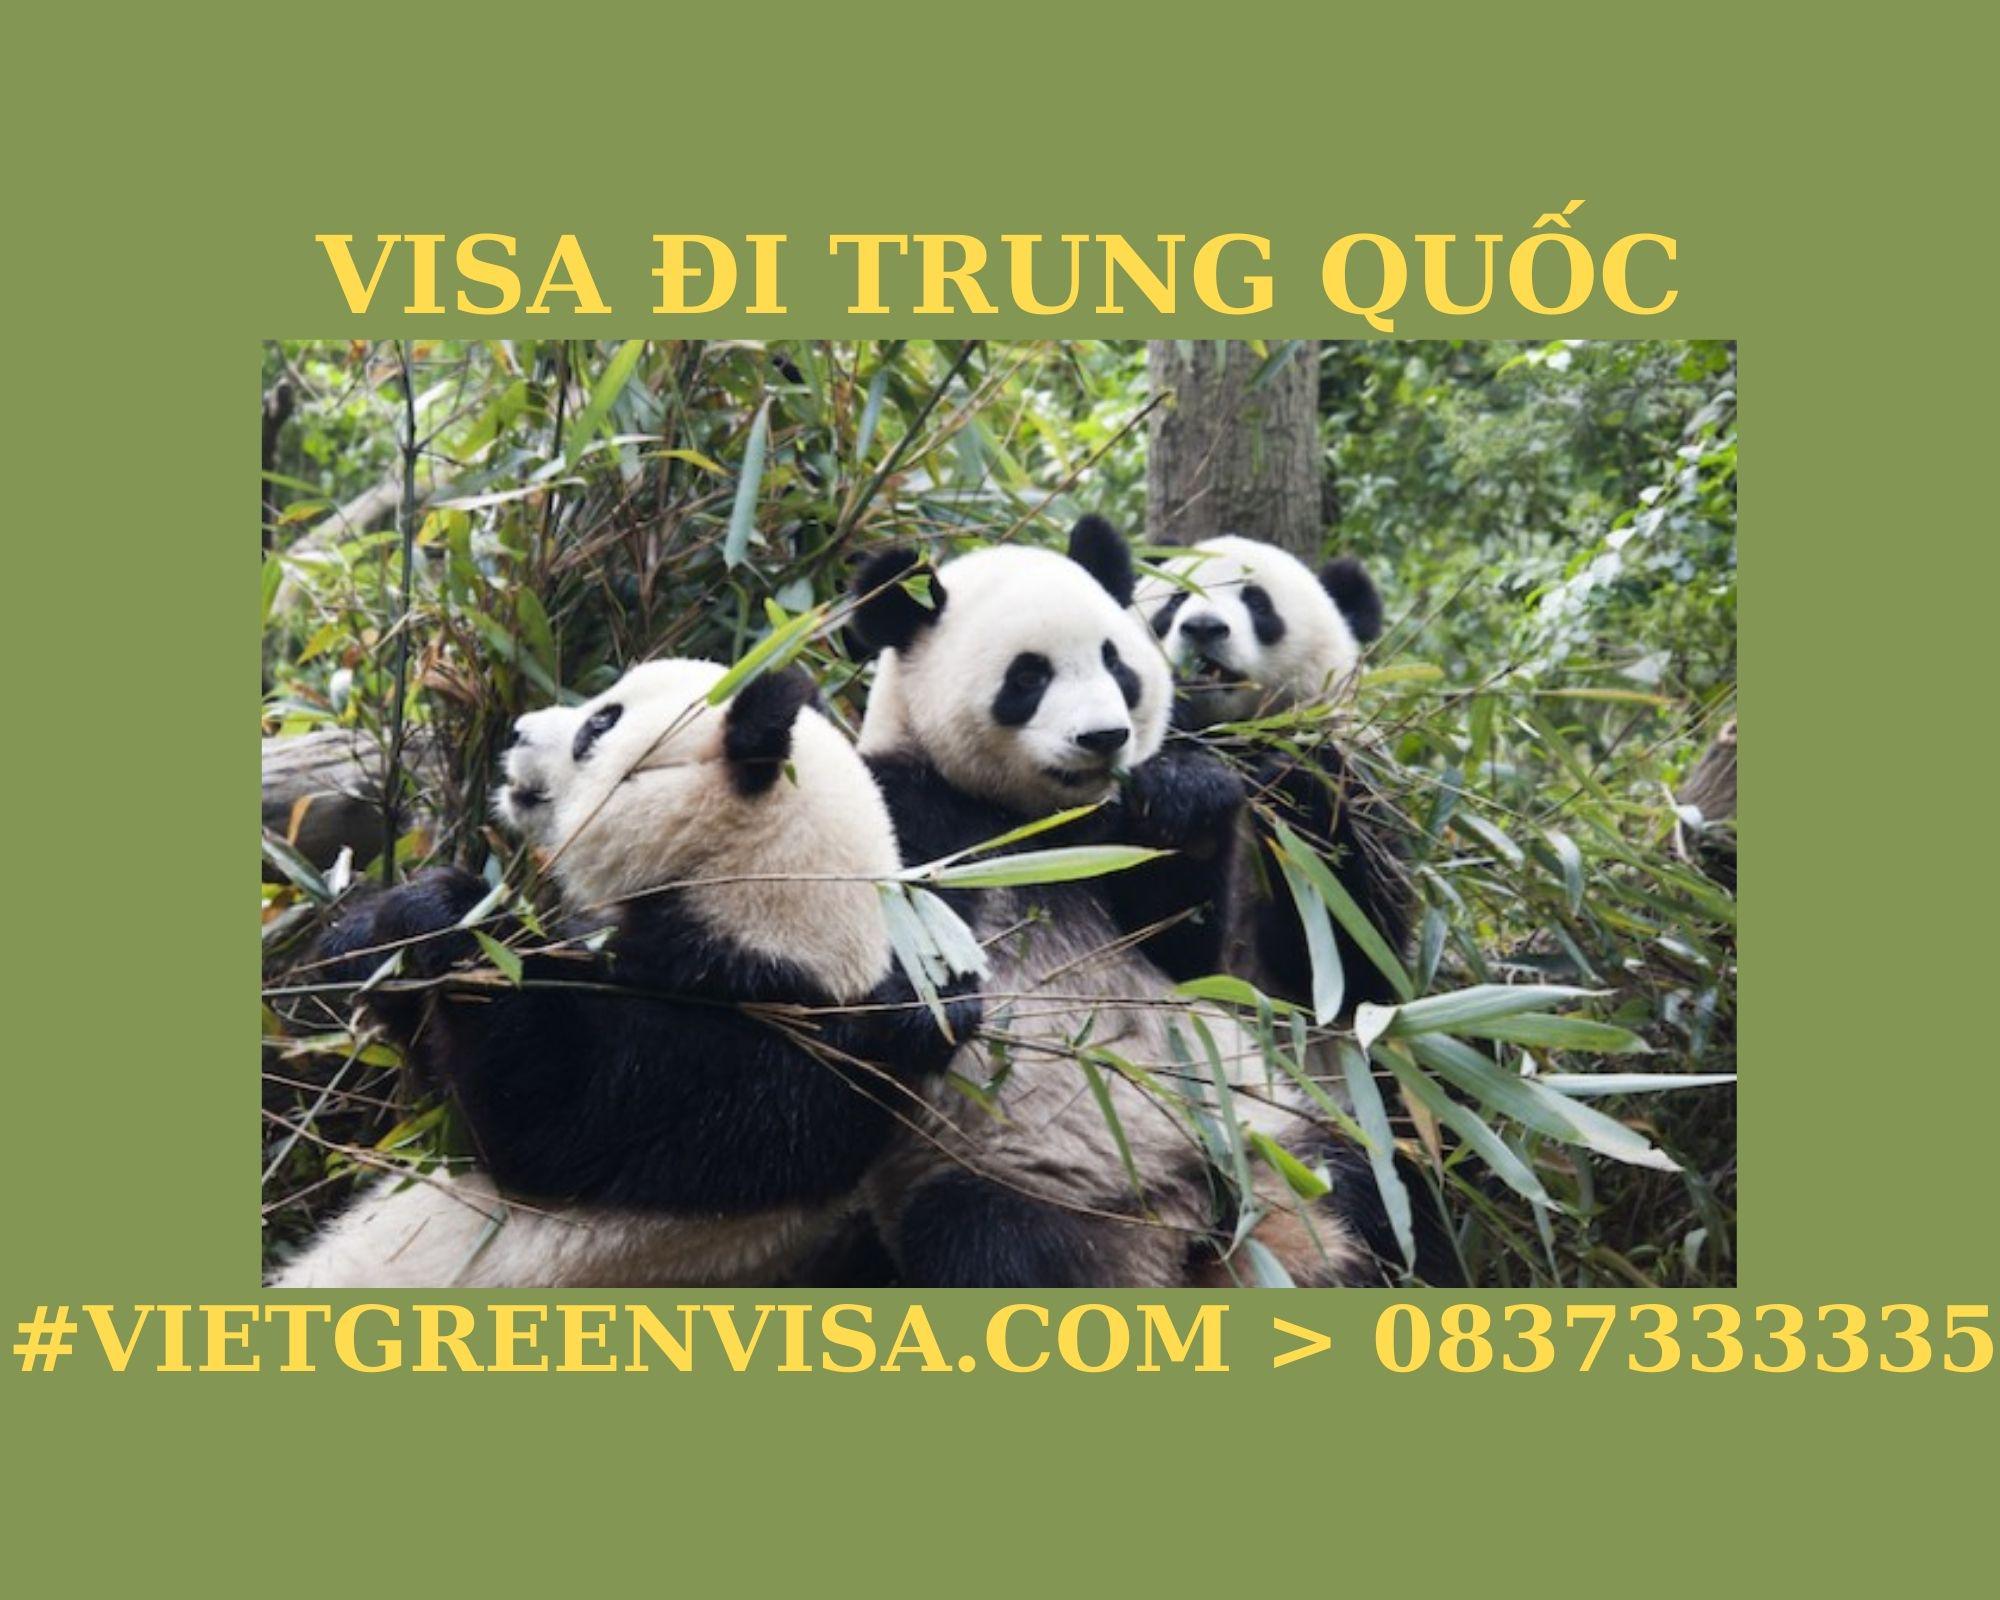 Dịch vụ xin visa làm thuyền viên đi Trung Quốc giá rẻ. Viet Green visa